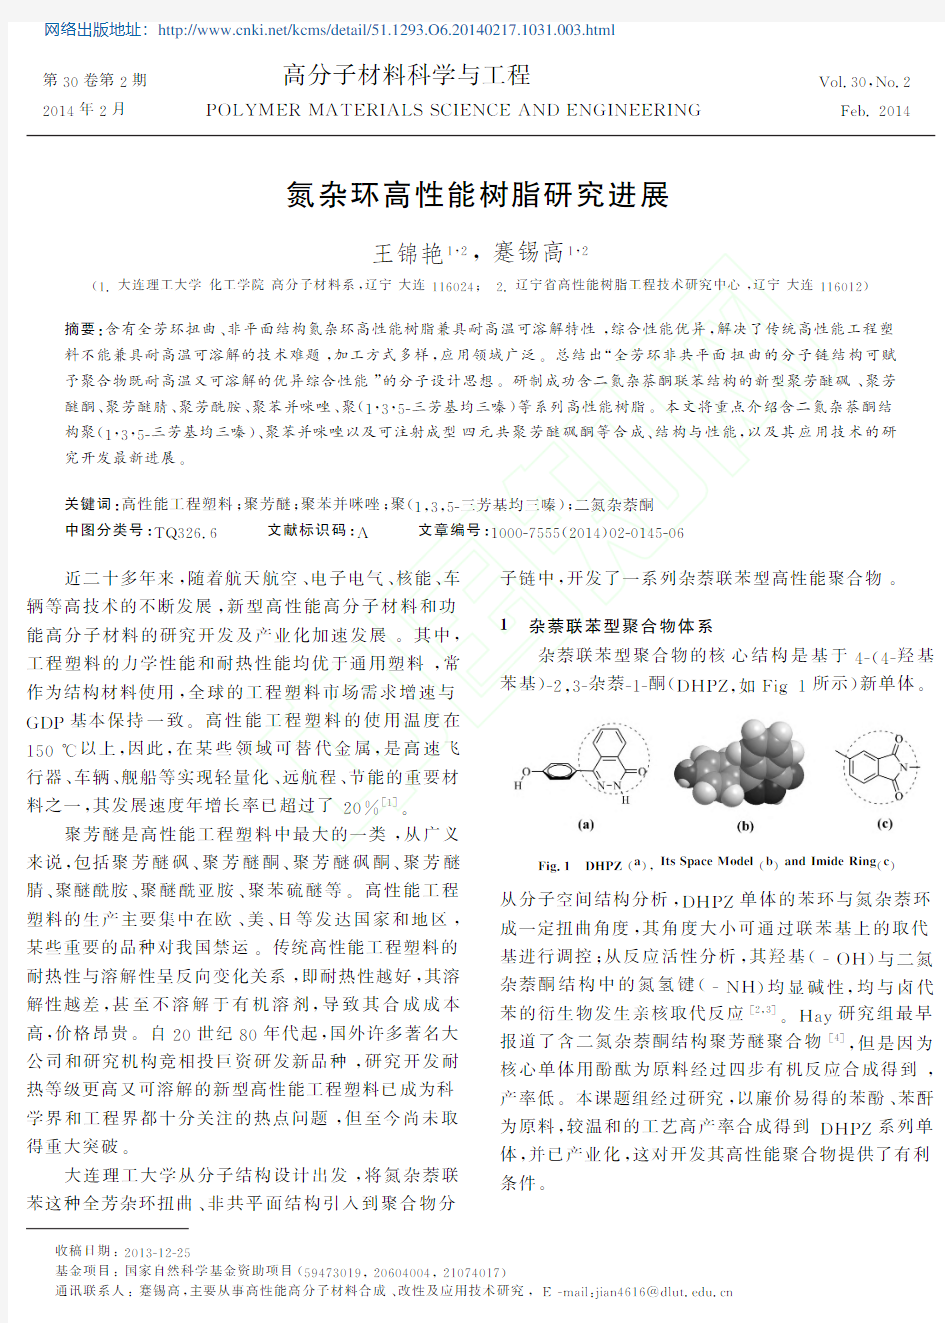 氮杂环高性能树脂研究进展_王锦艳